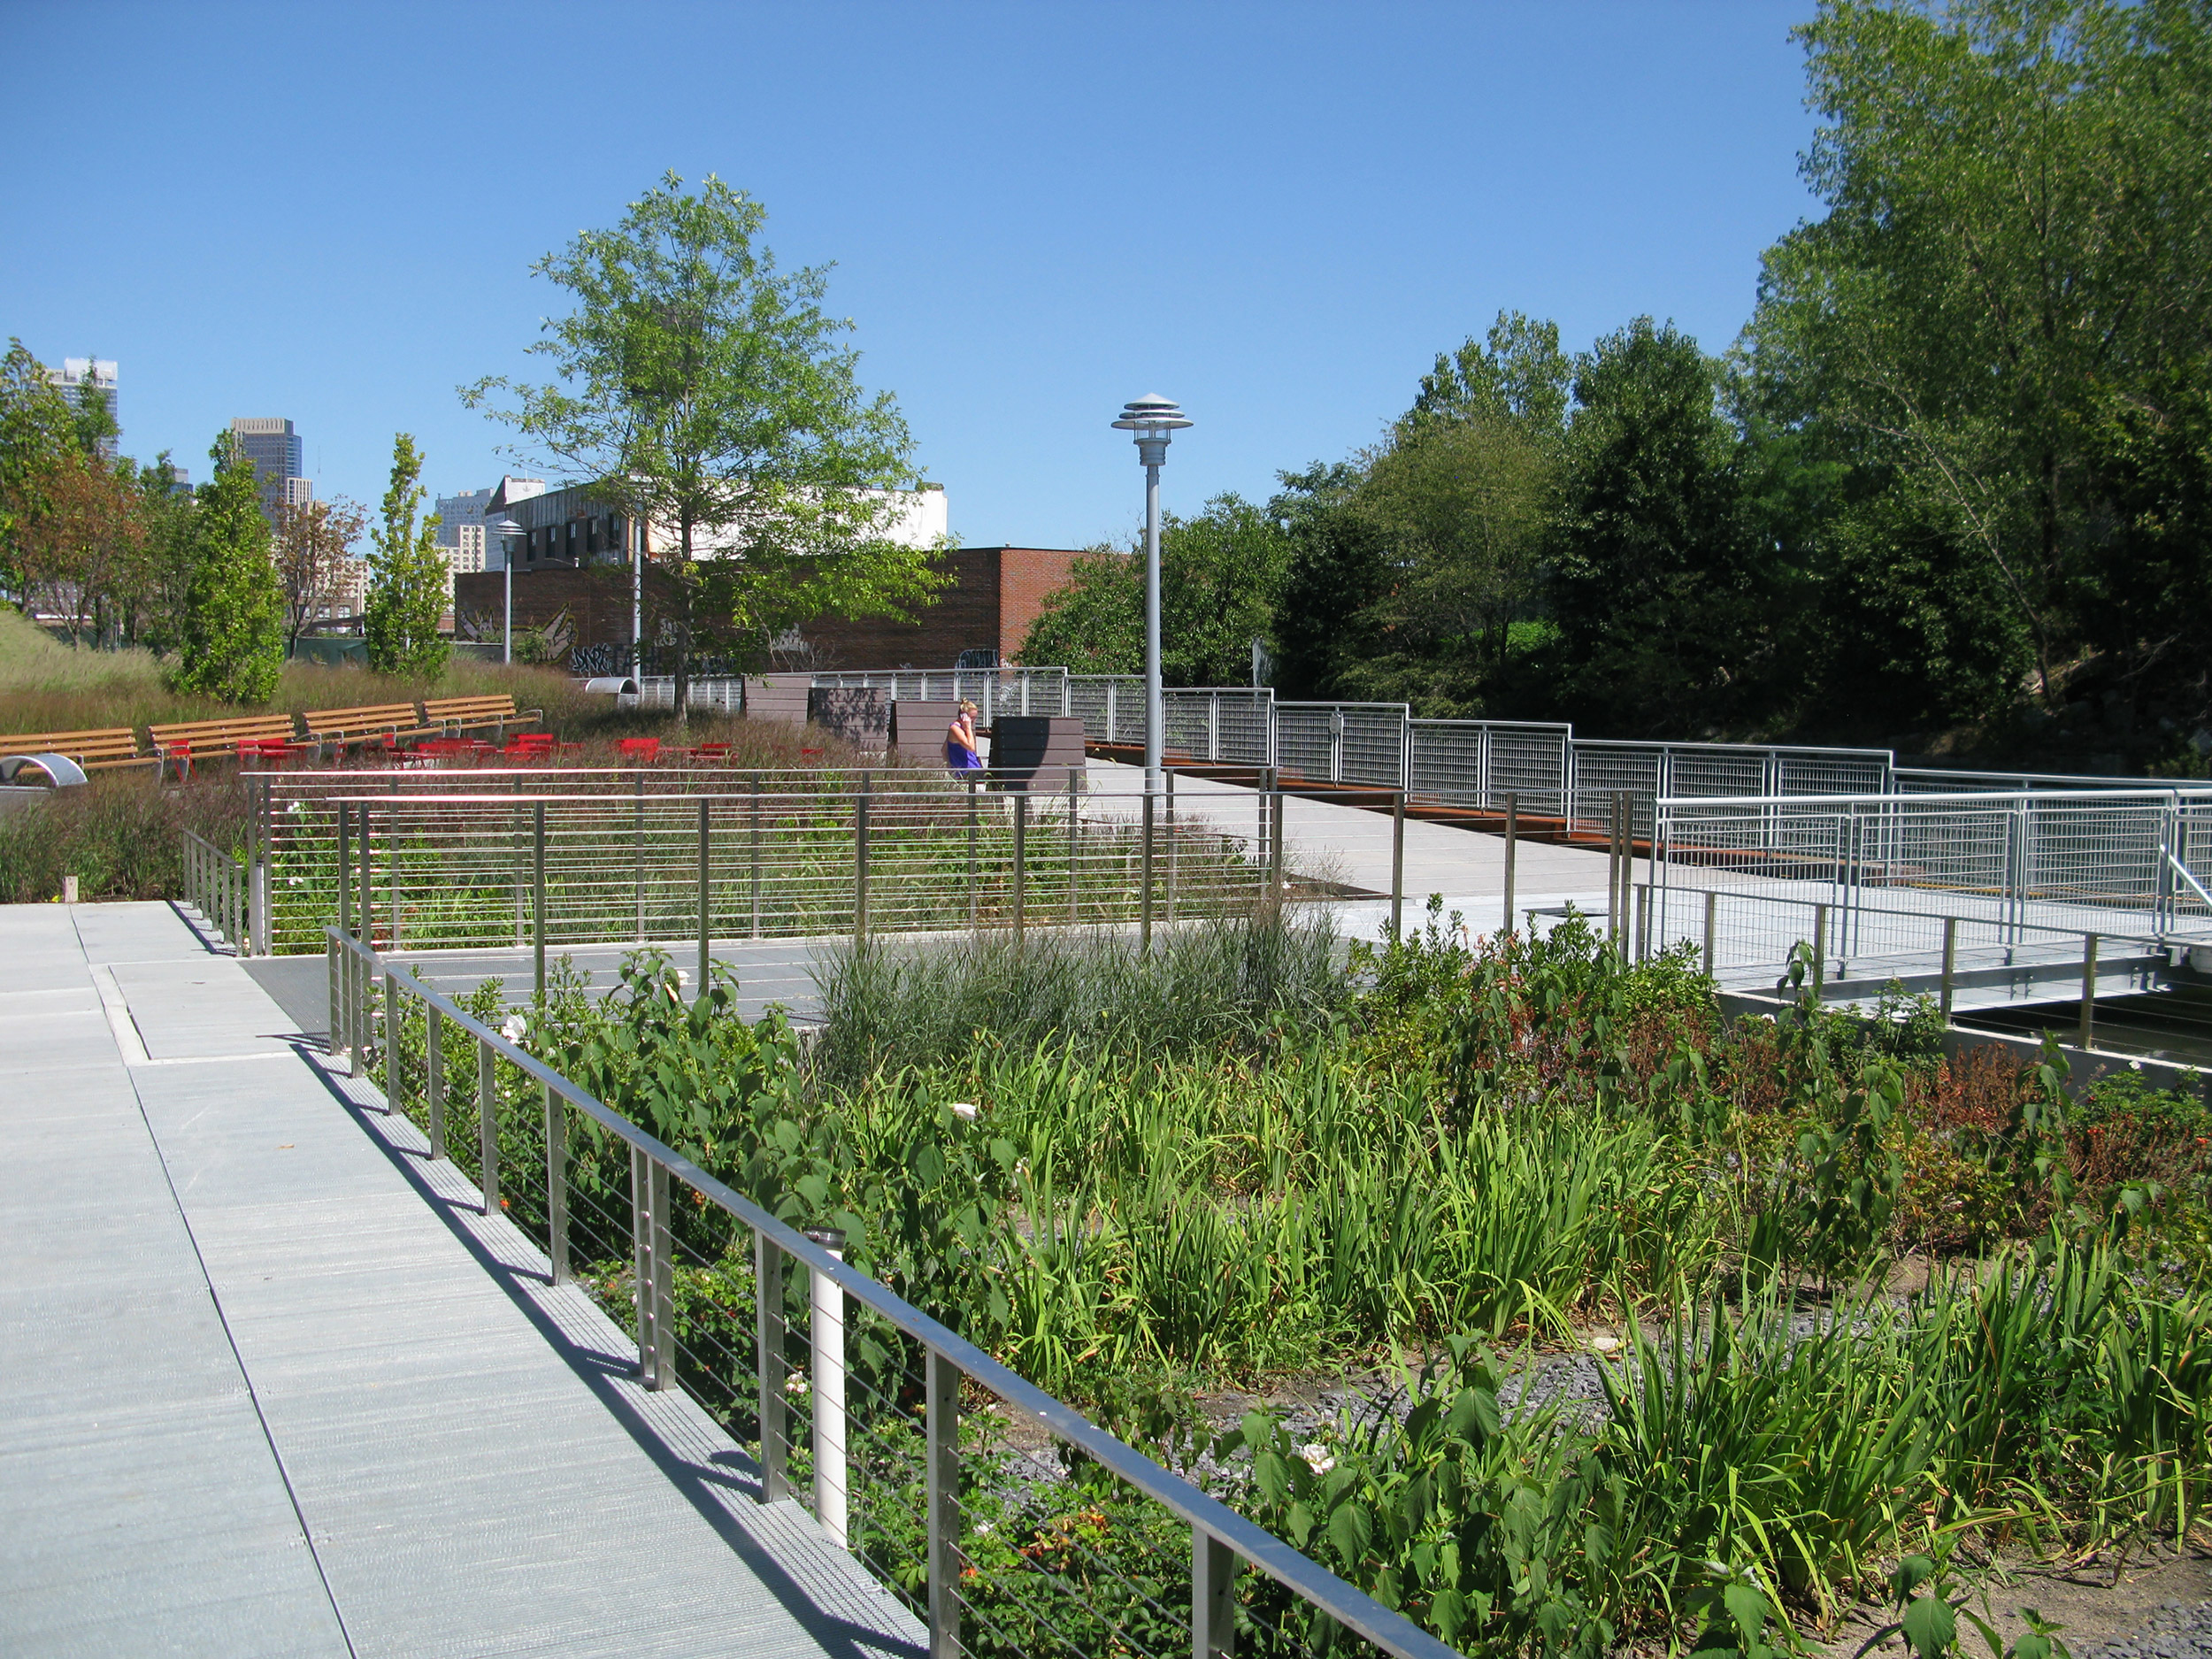 Project: The Gowanus Canal Sponge Park Pilot Architect and Landscape Architect: DLANDstudio Architecture + Landscape Architecture. Photo: Courtesy of DLANDstudio Architecture + Landscape Architecture.